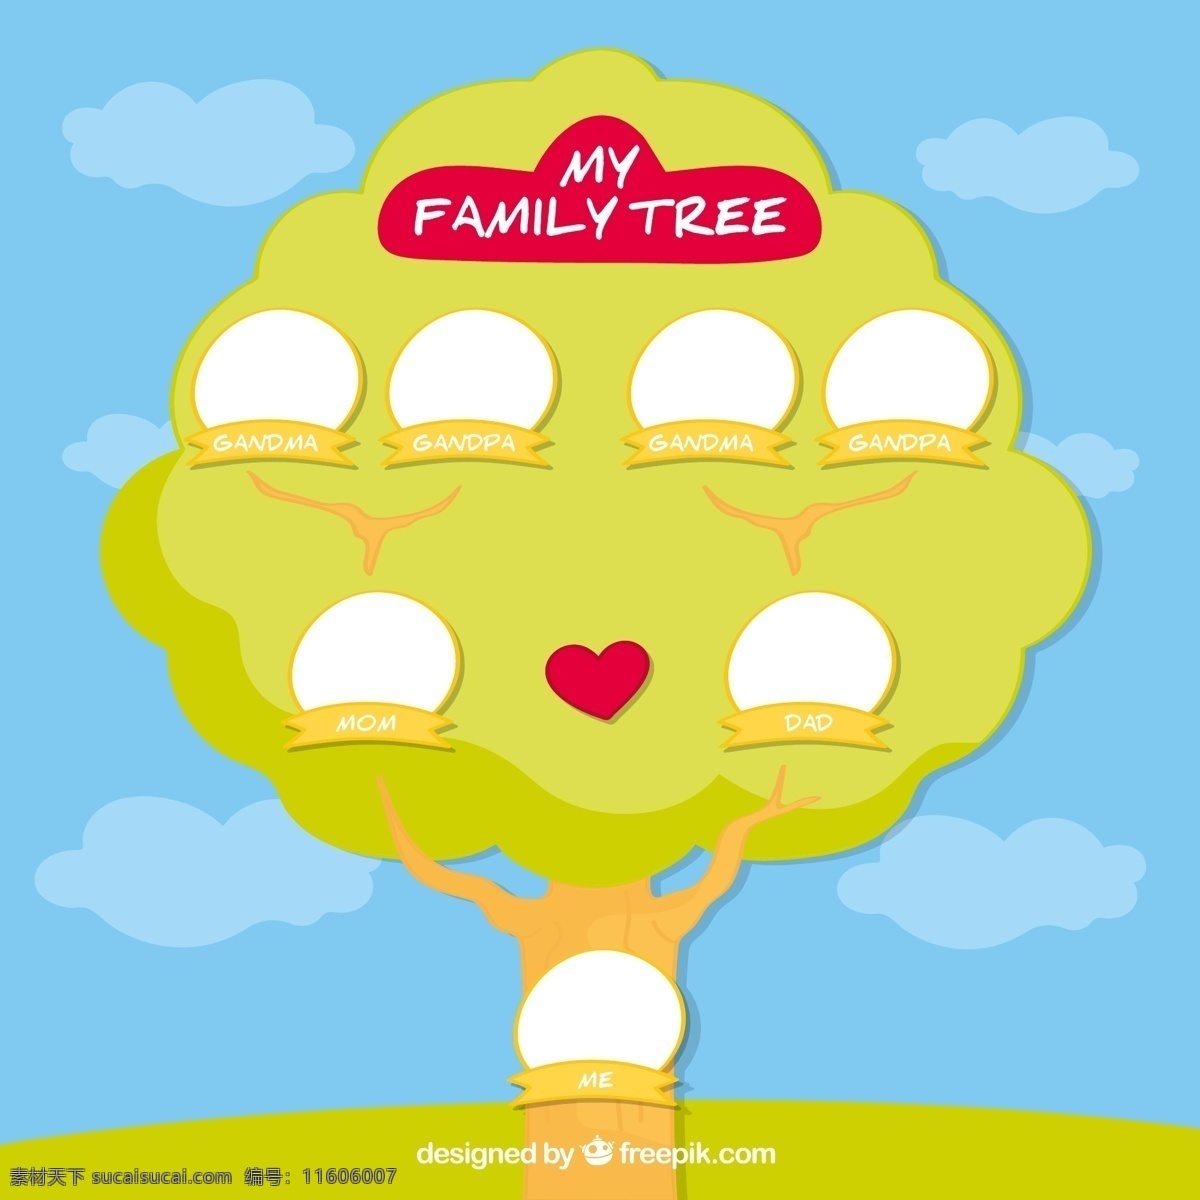 绿色 空白 头像 家族 树 矢量图 云朵 家庭 家族树 爱心 ai格式 矢量素材 最新矢量图 画册设计